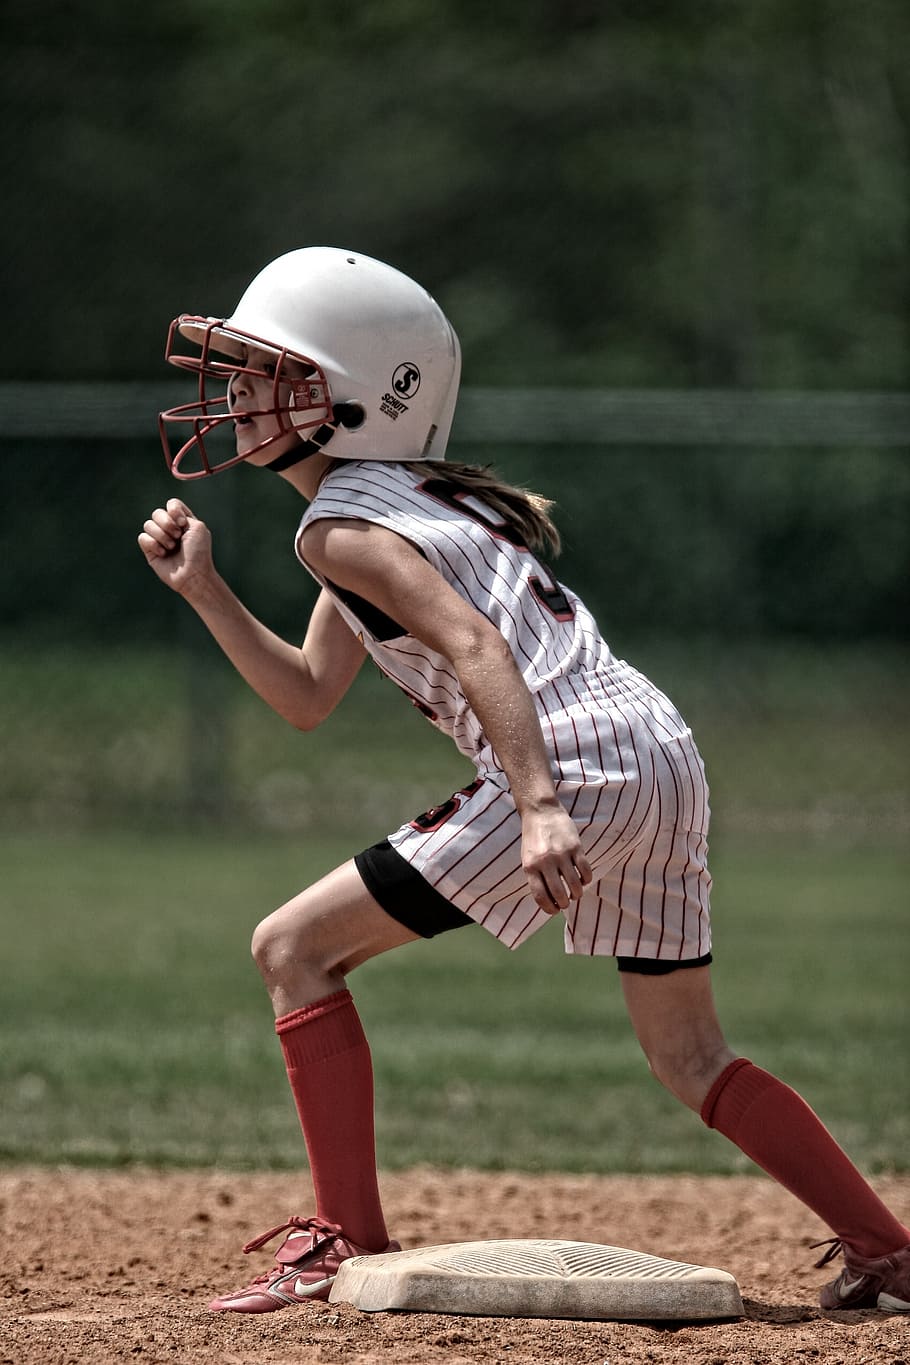 softball, runner, girl, base, sport, athletic, youth, athlete, female, helmet